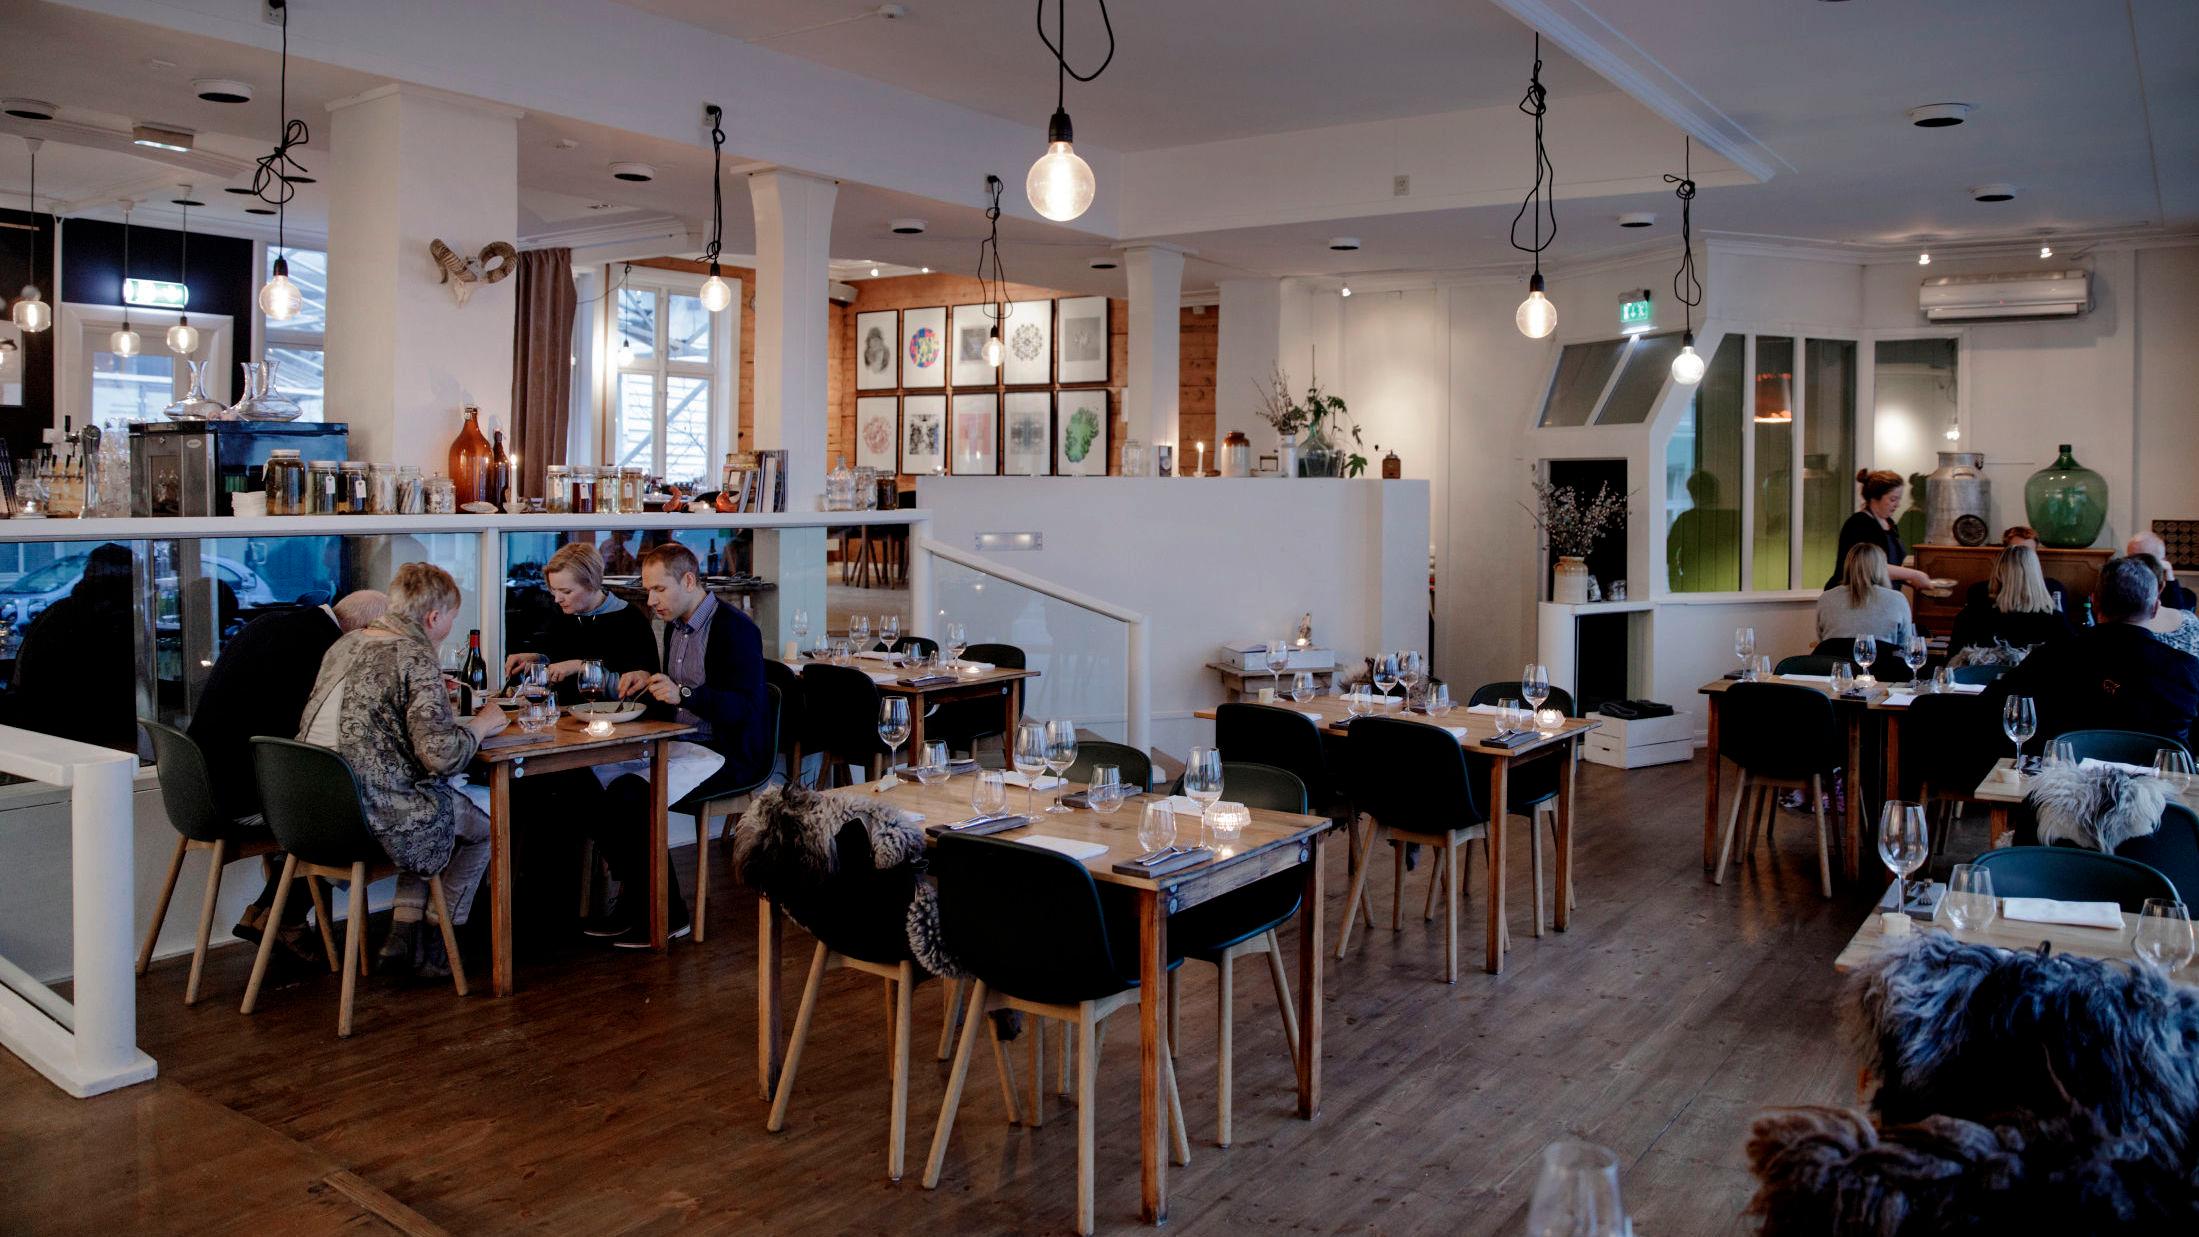 TERNINGKAST 5: Nesten toppkarakter til Bergens-restauranten Marg & Bein. Foto: Paul S. Amundsen/VG